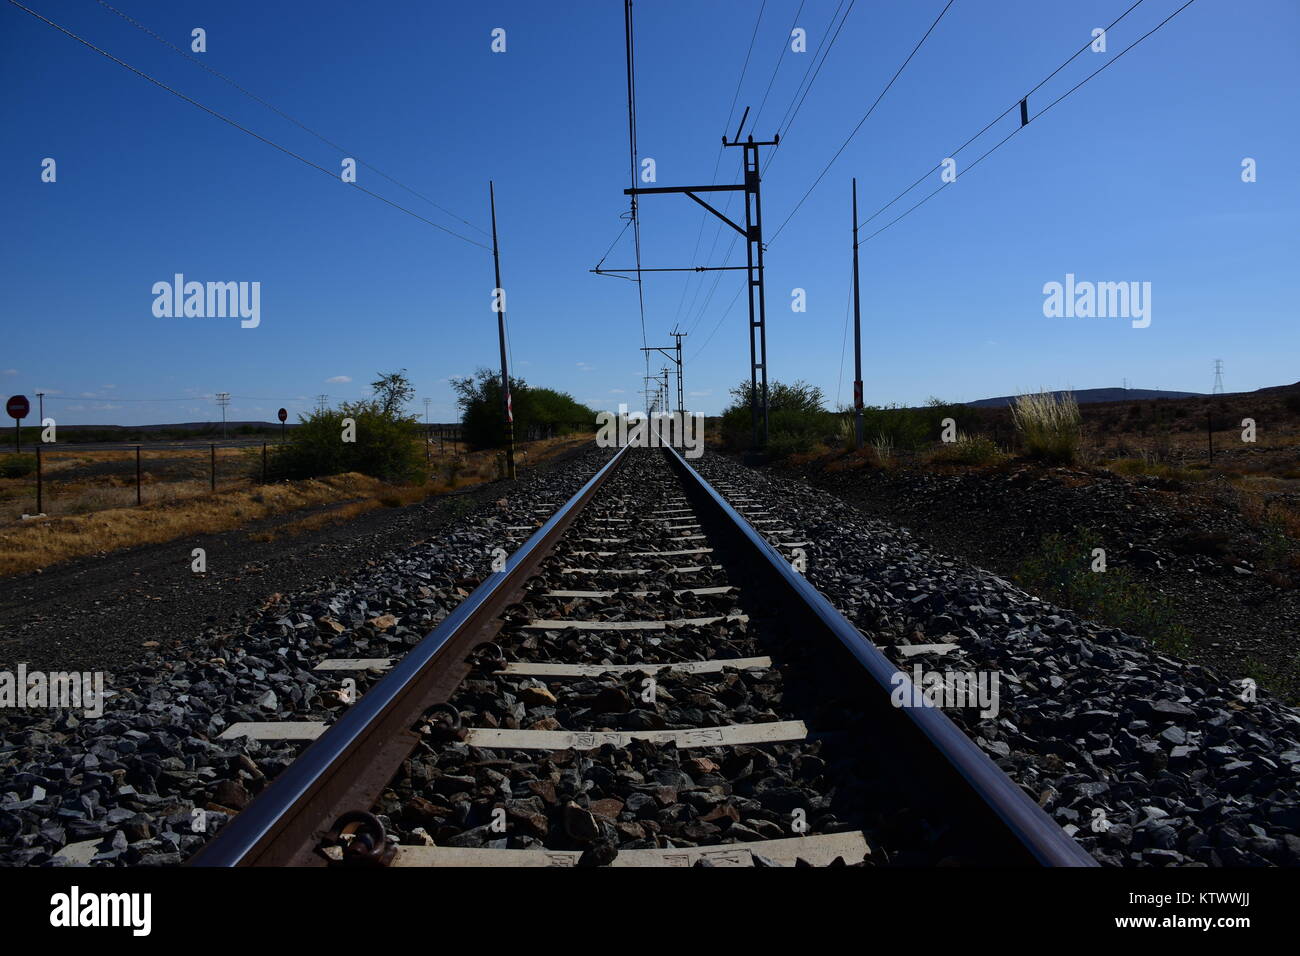 Binari del treno girato a basso angolo convergenti in un punto di fuga all'orizzonte con un cielo blu sopra Foto Stock